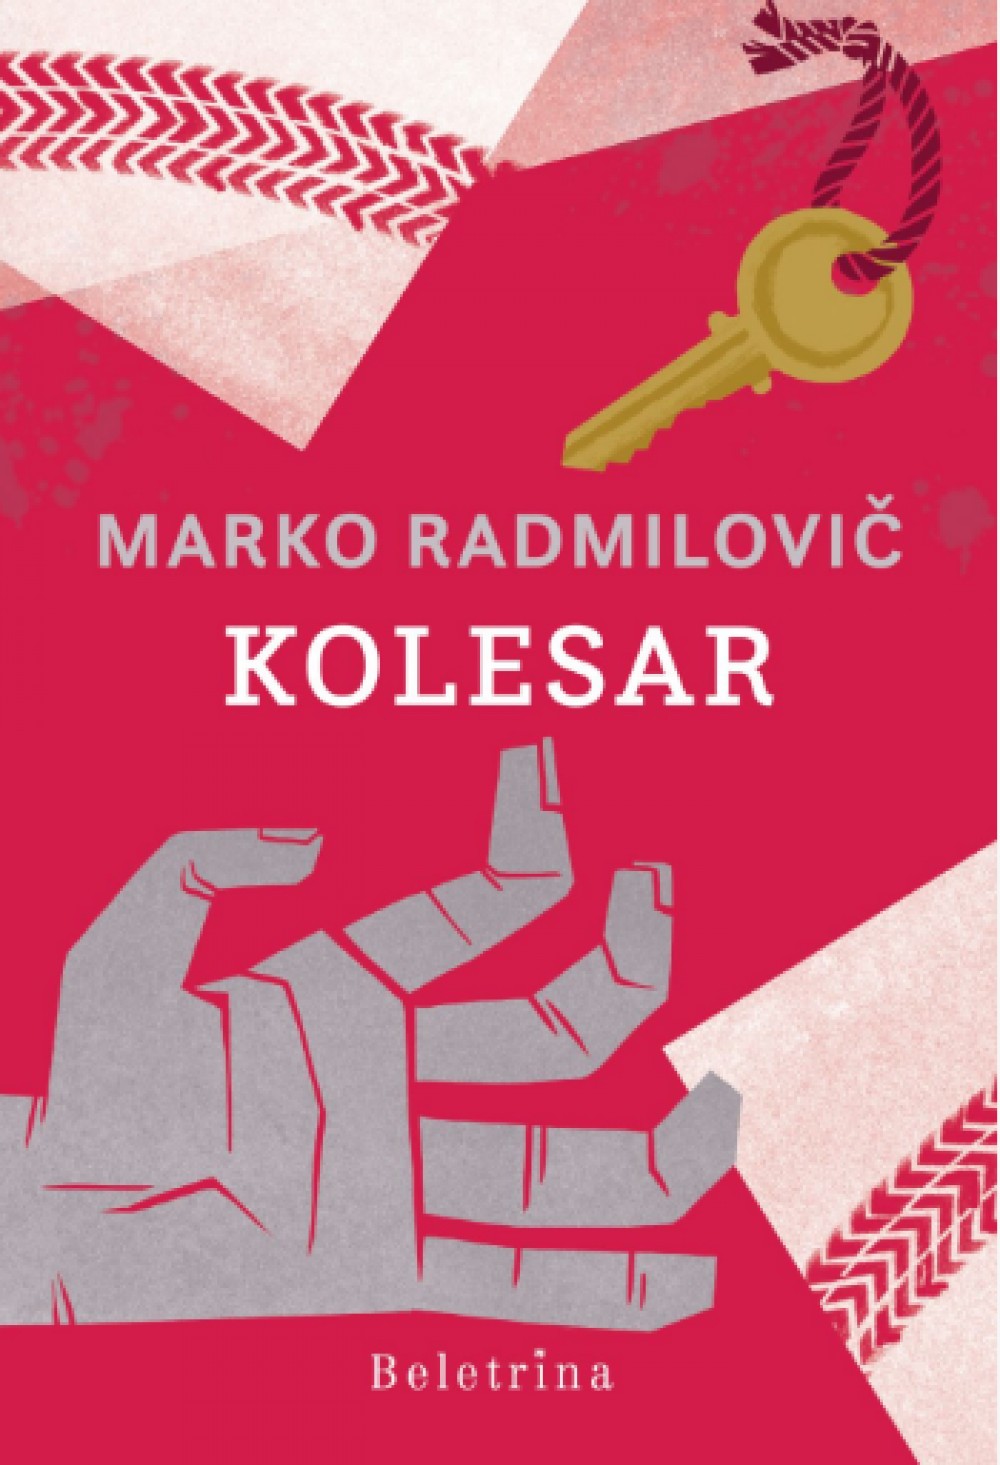 Predstavitev romana Marka Radmiloviča Kolesar